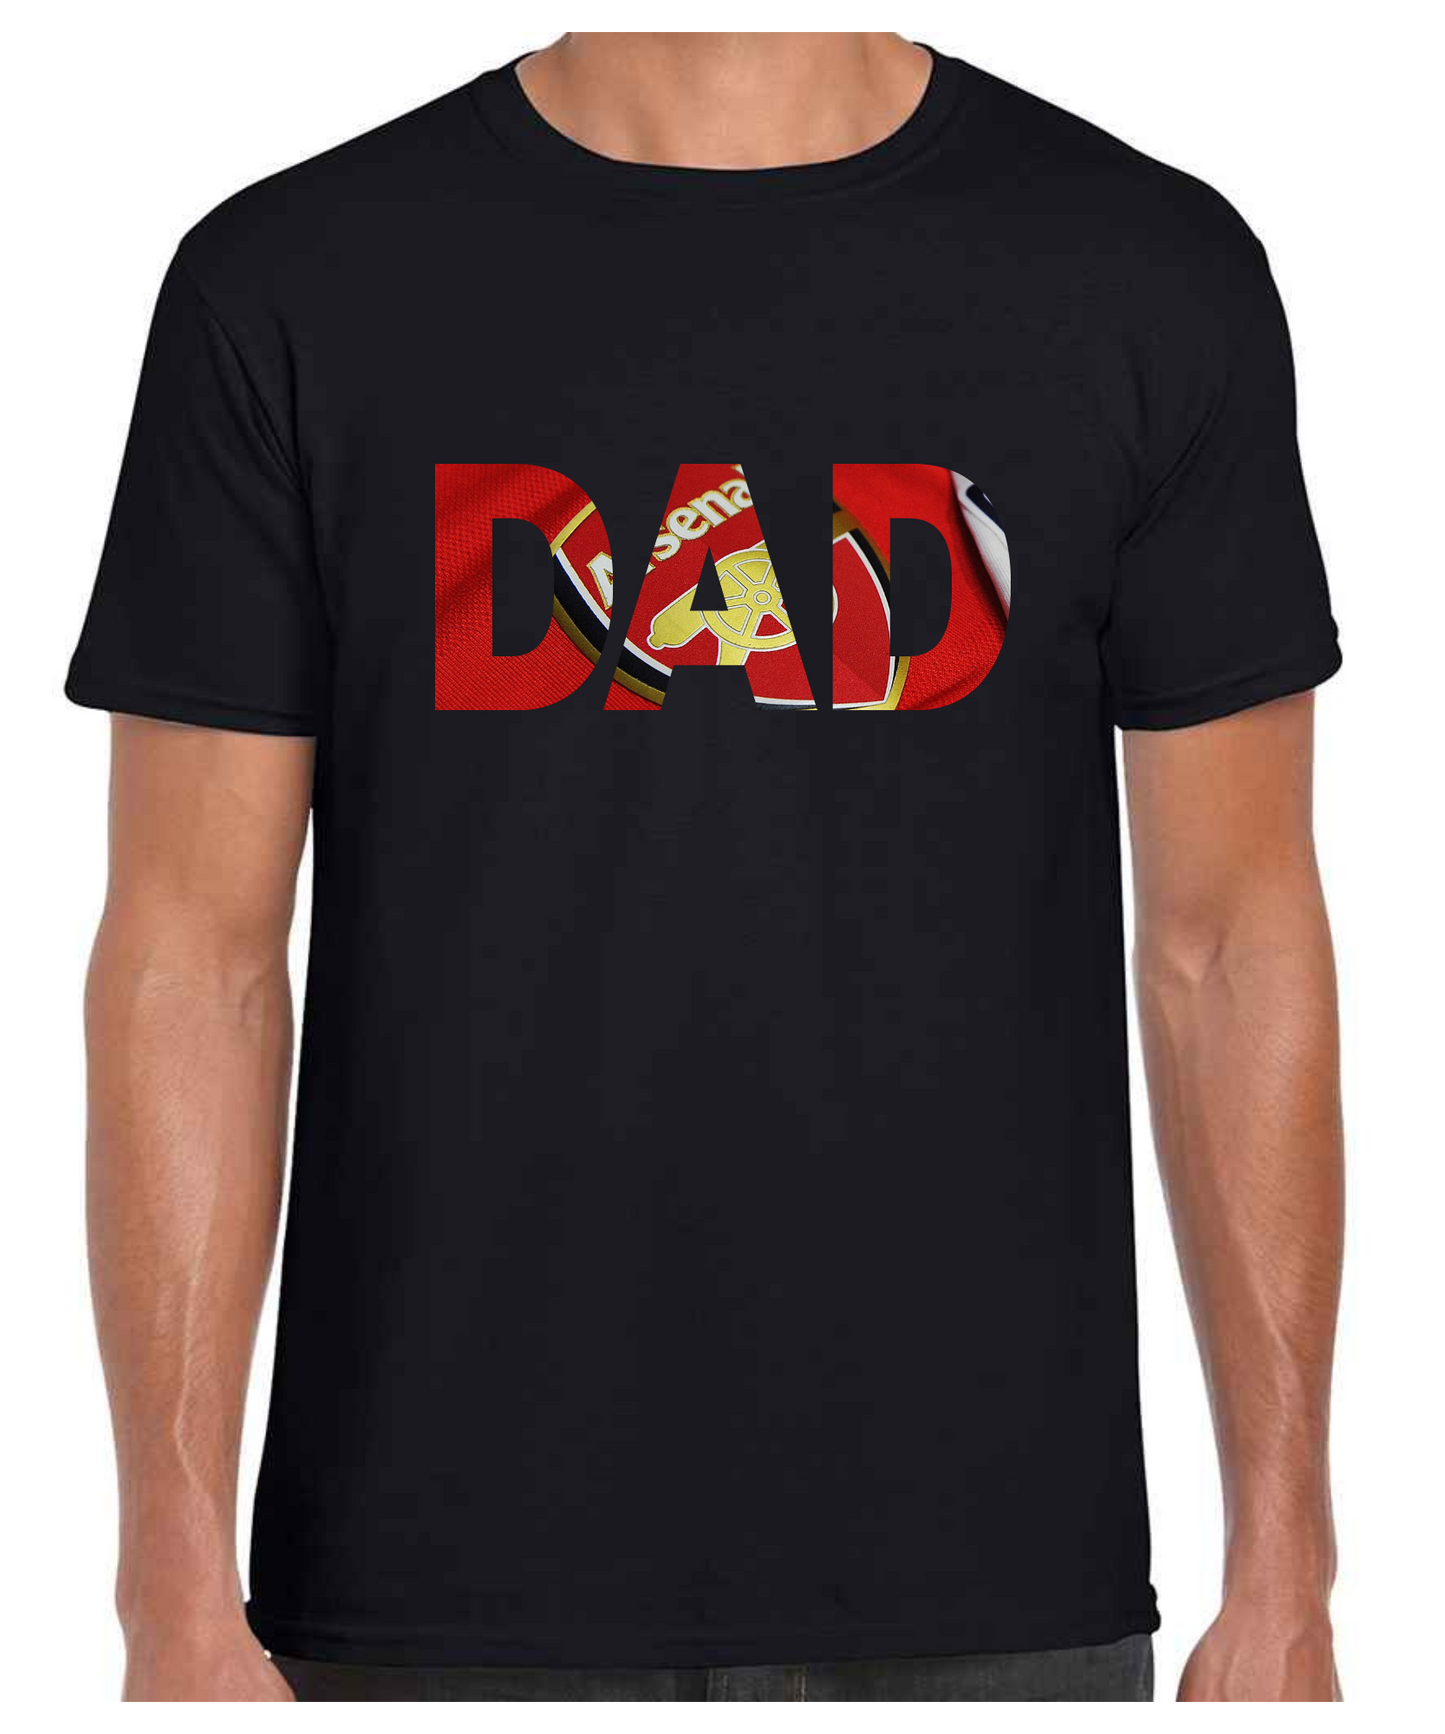 Arsenal - Dad T Shirt (White/Black/Grey)